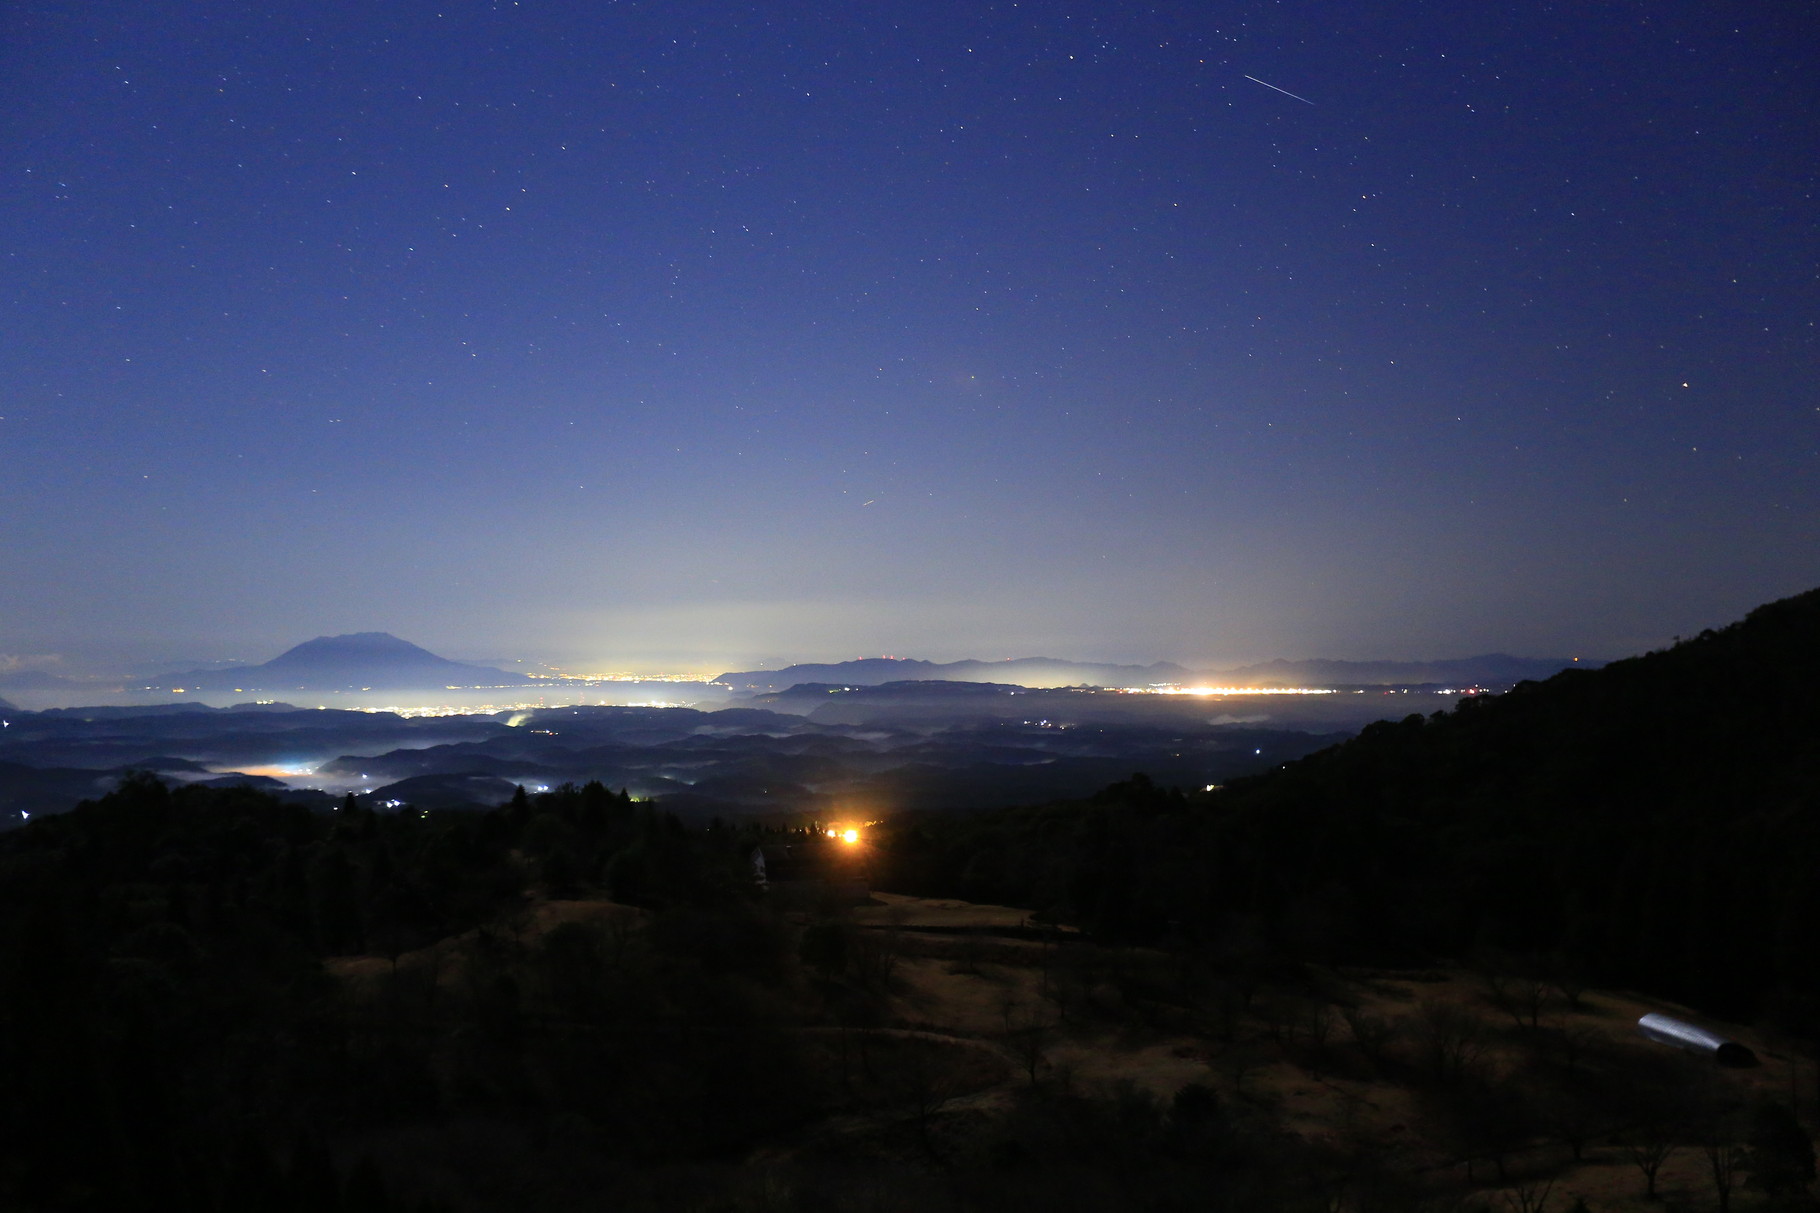 遥かに桜島を見据え、夜空には一つの流れ星